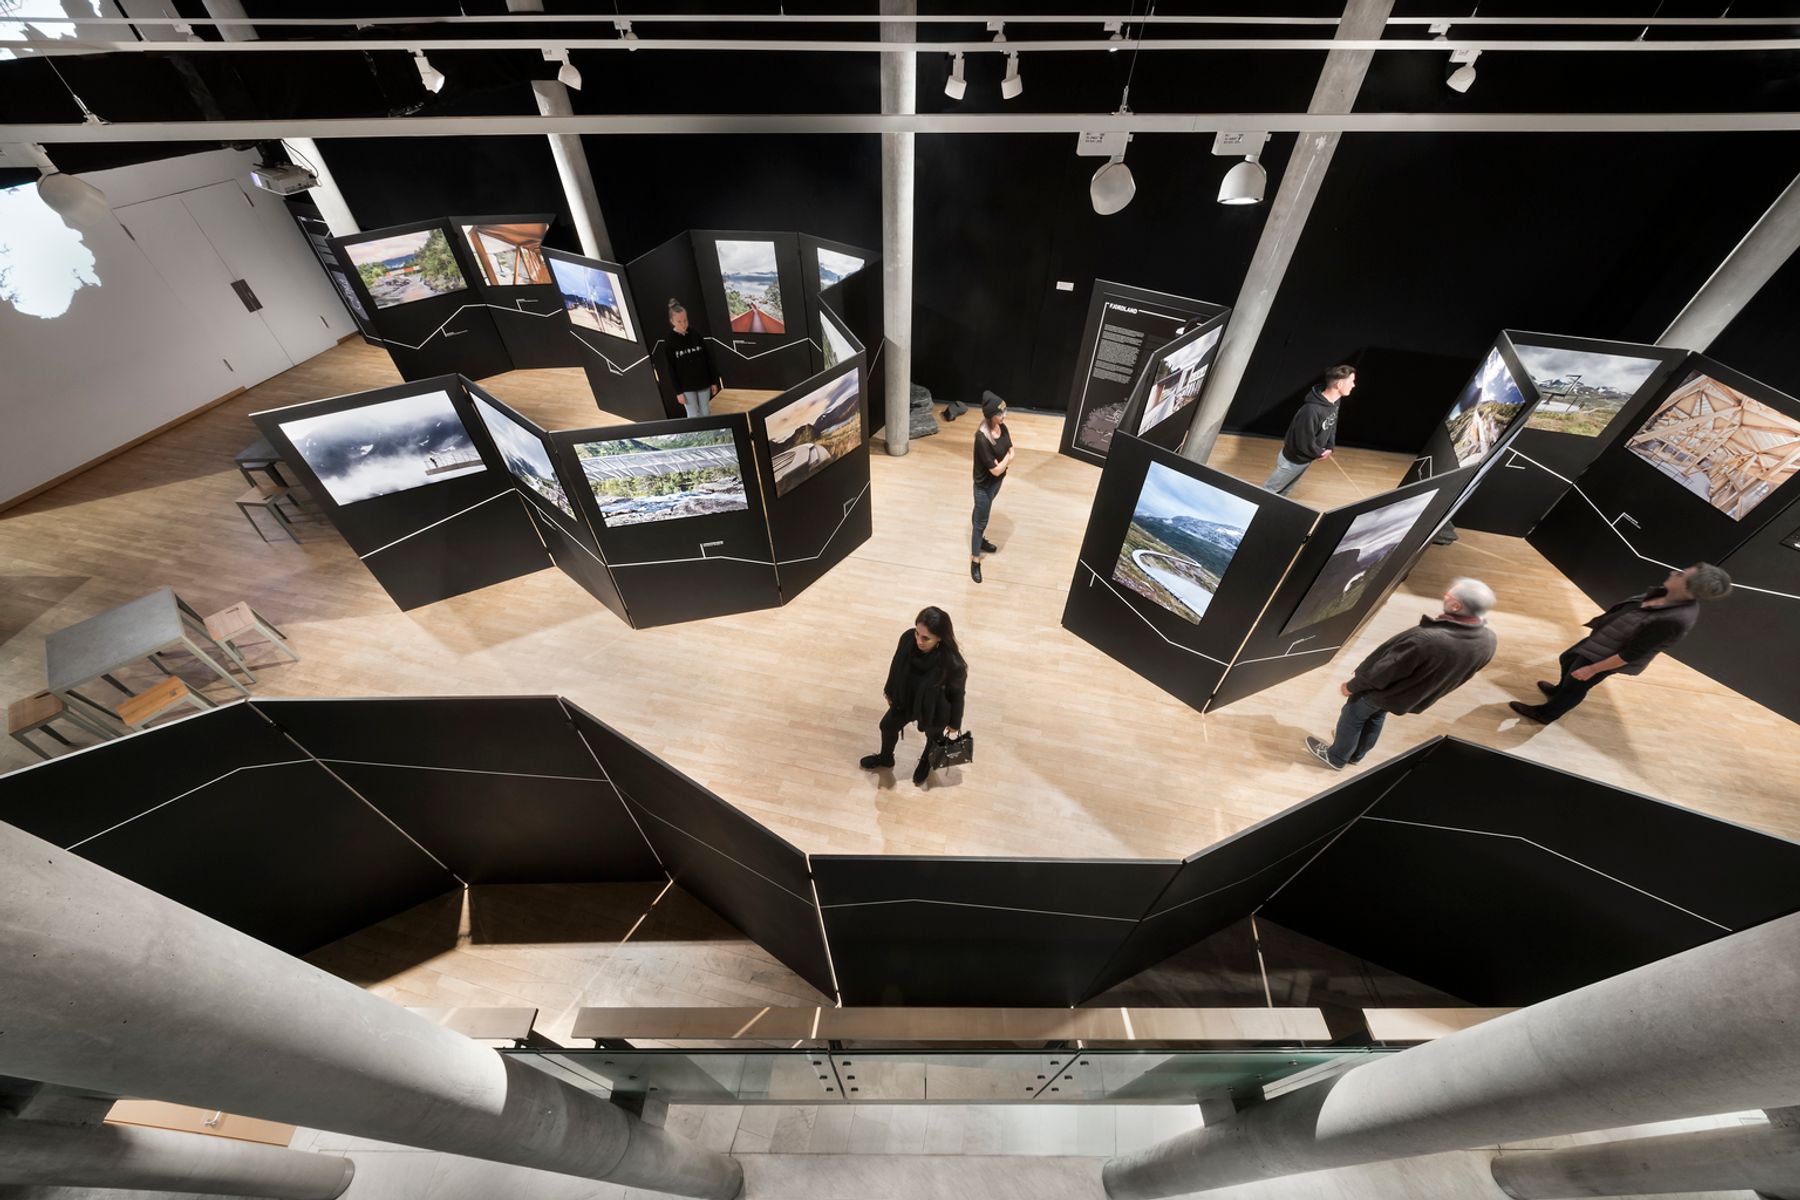 Exposition « Architecture et paysage en Norvège » de Ken Schluchtmann dans les ambassades des Pays Nordiques, Berlin. Photographie : Ken Schluchtmann / diephotodesigner.de, Berlin.